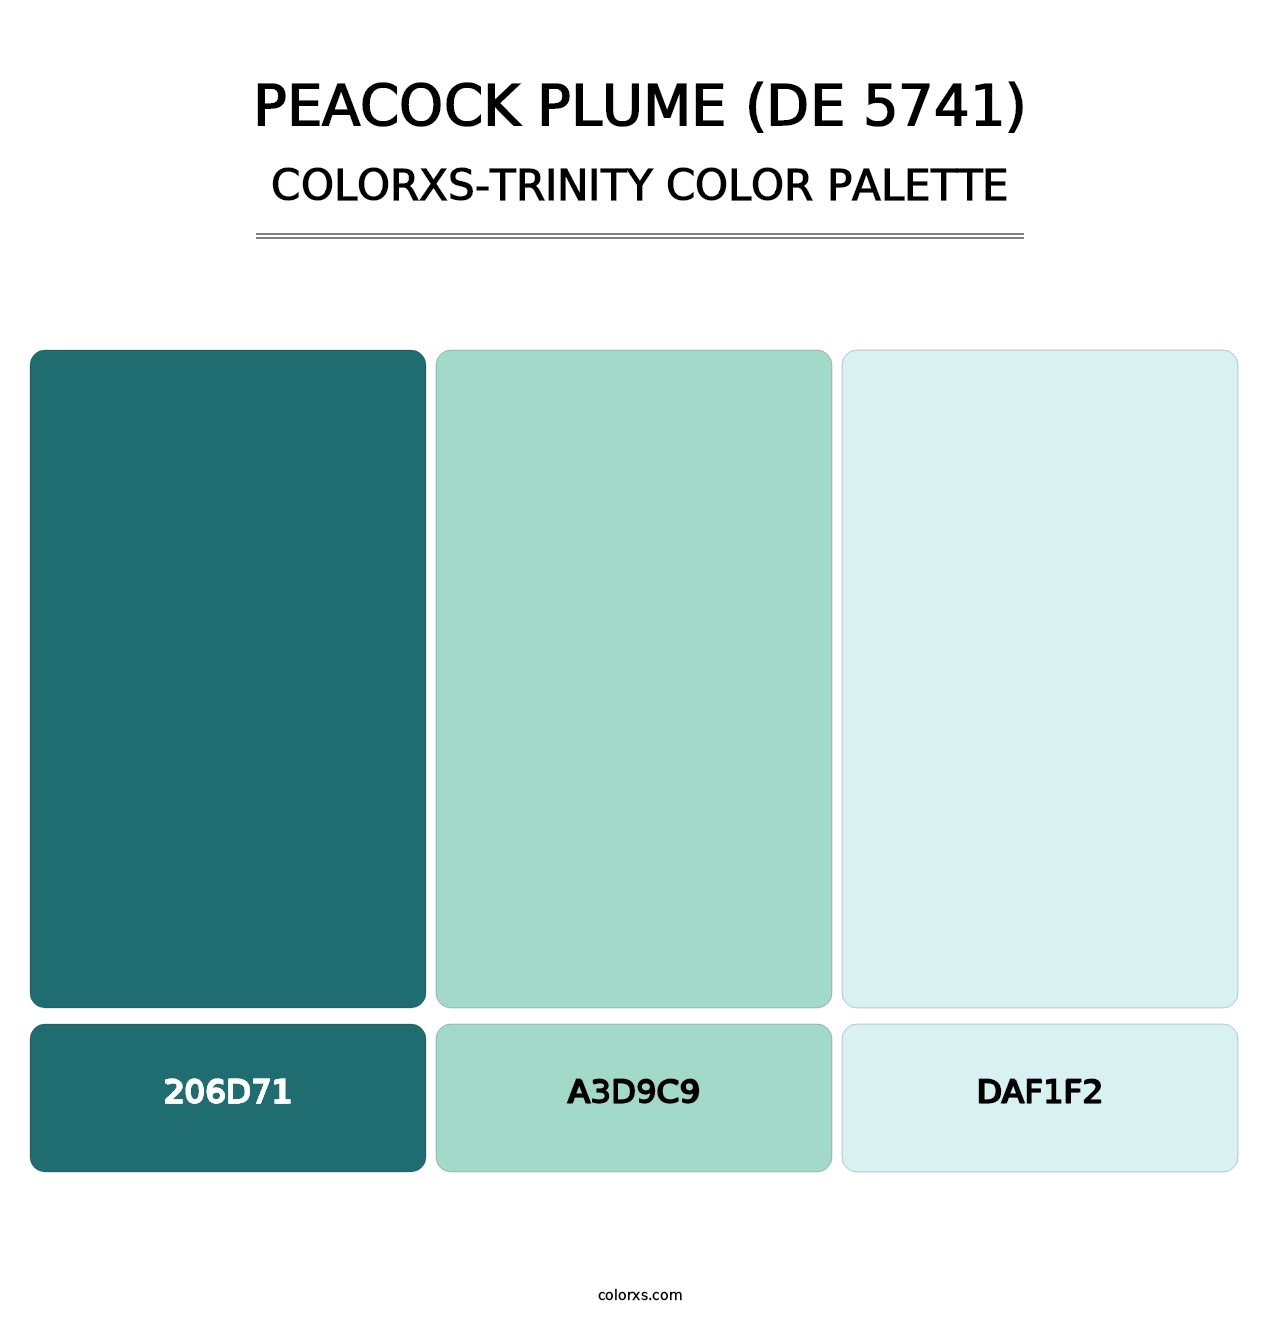 Peacock Plume (DE 5741) - Colorxs Trinity Palette